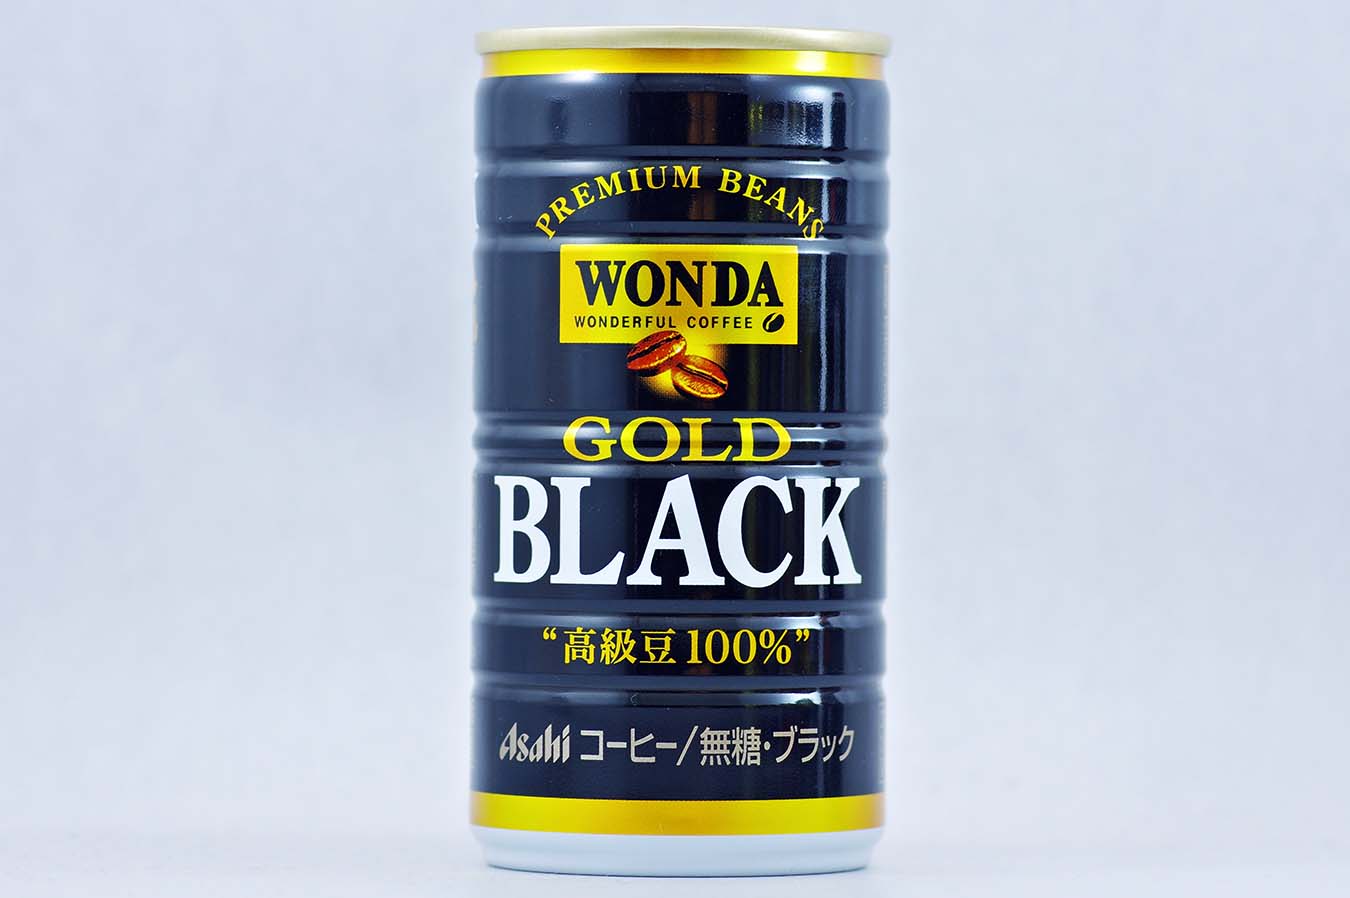 WONDA ゴールドブラック 2015年9月